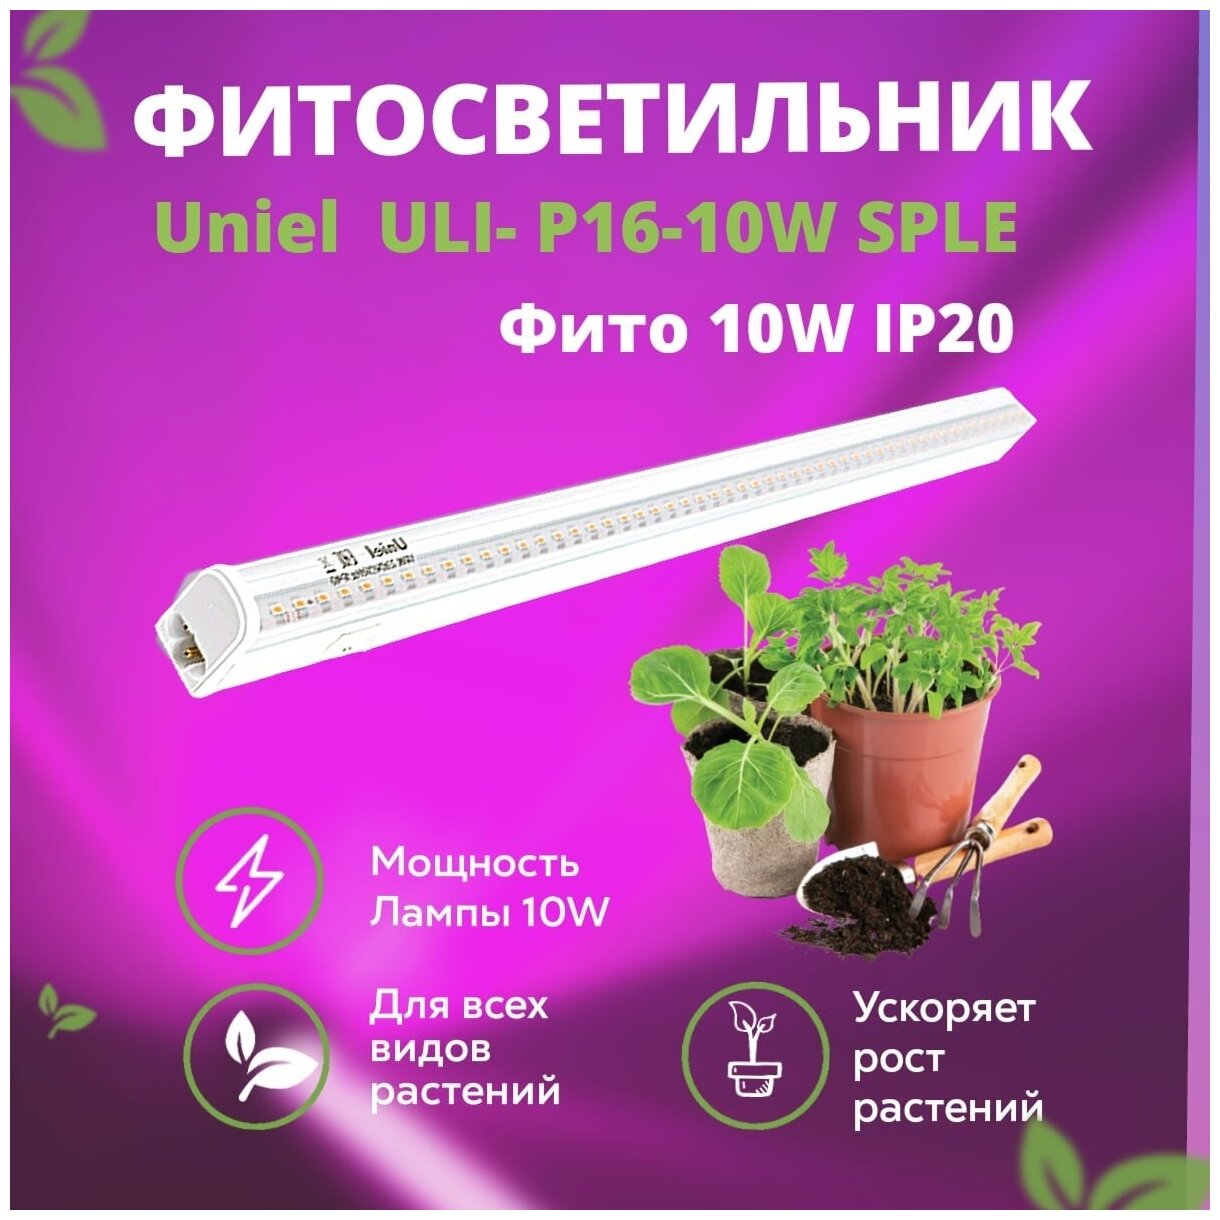 Фито светильник для растений Uniel, фитолампа для растений 10W IP20 ULI-P16 SPLE полный спектр, светильник для растений спектр для фотосинтеза,560 мм - фотография № 1